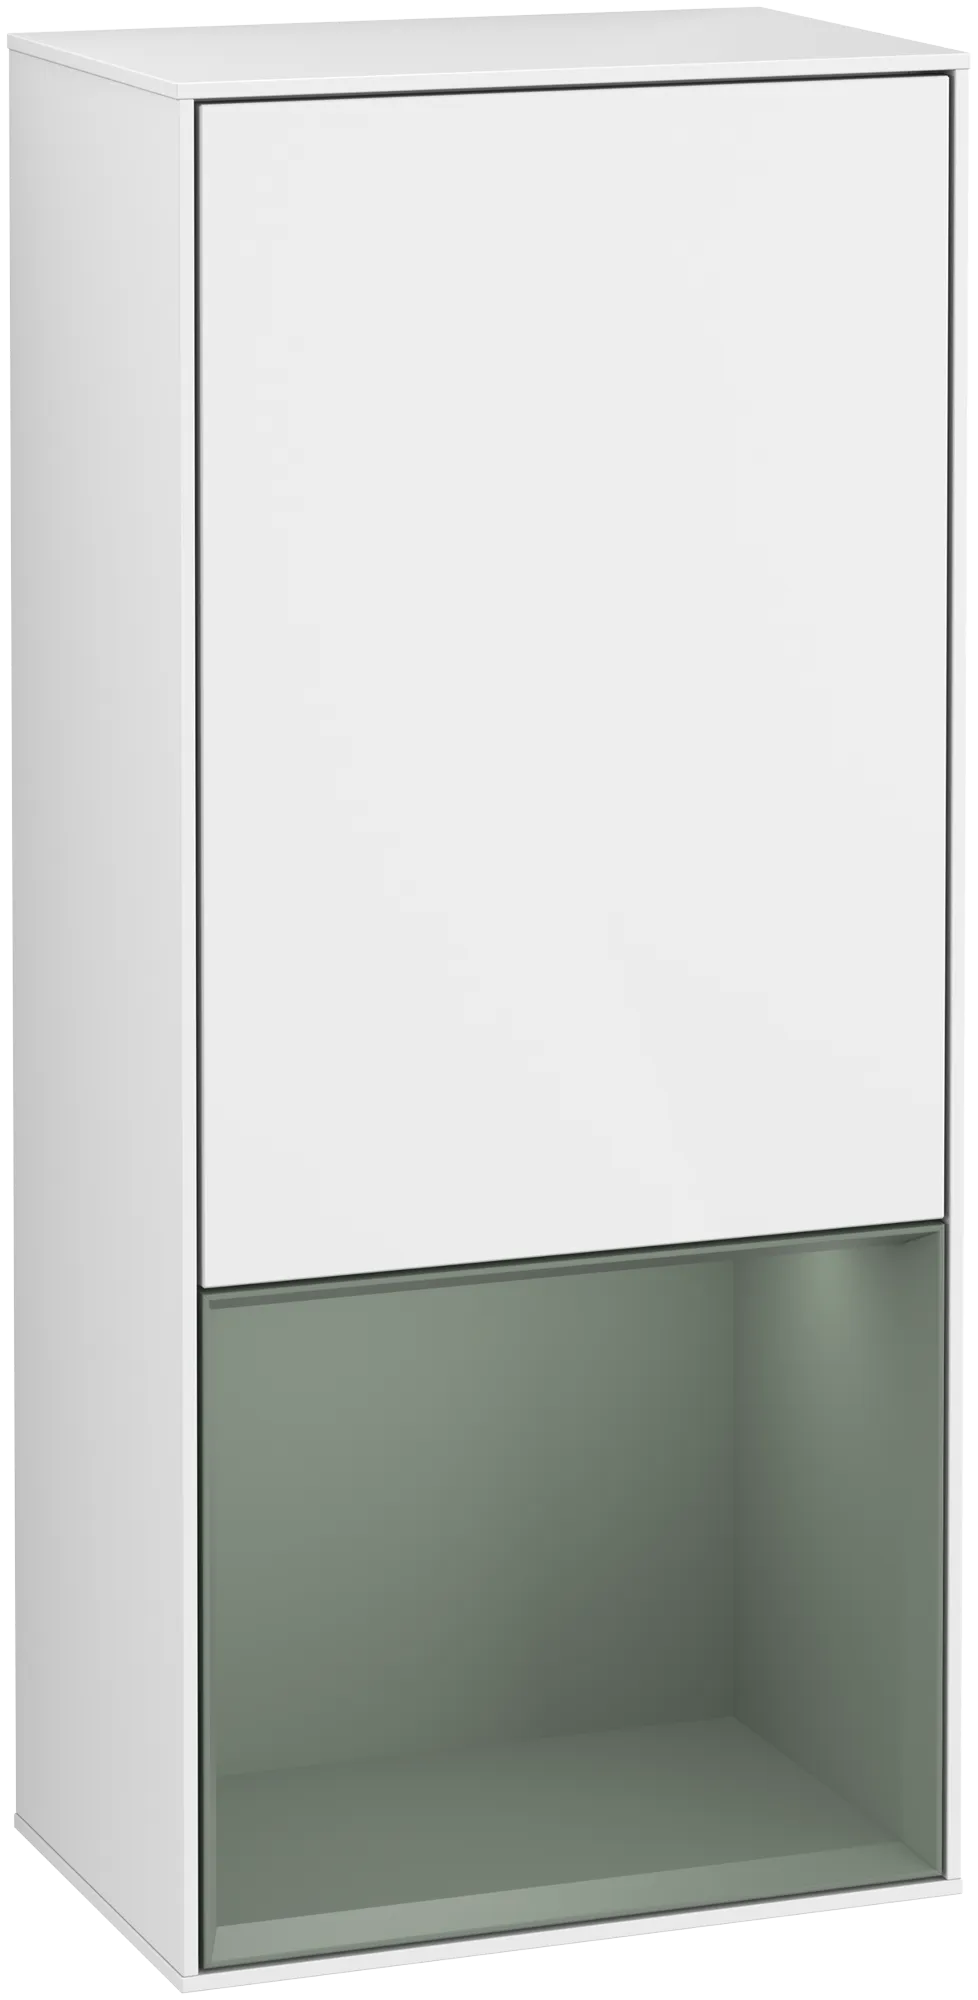 Bild von VILLEROY BOCH Finion Seitenschrank, mit Beleuchtung, 1 Tür, 418 x 936 x 270 mm, Glossy White Lacquer / Olive Matt Lacquer #G550GMGF